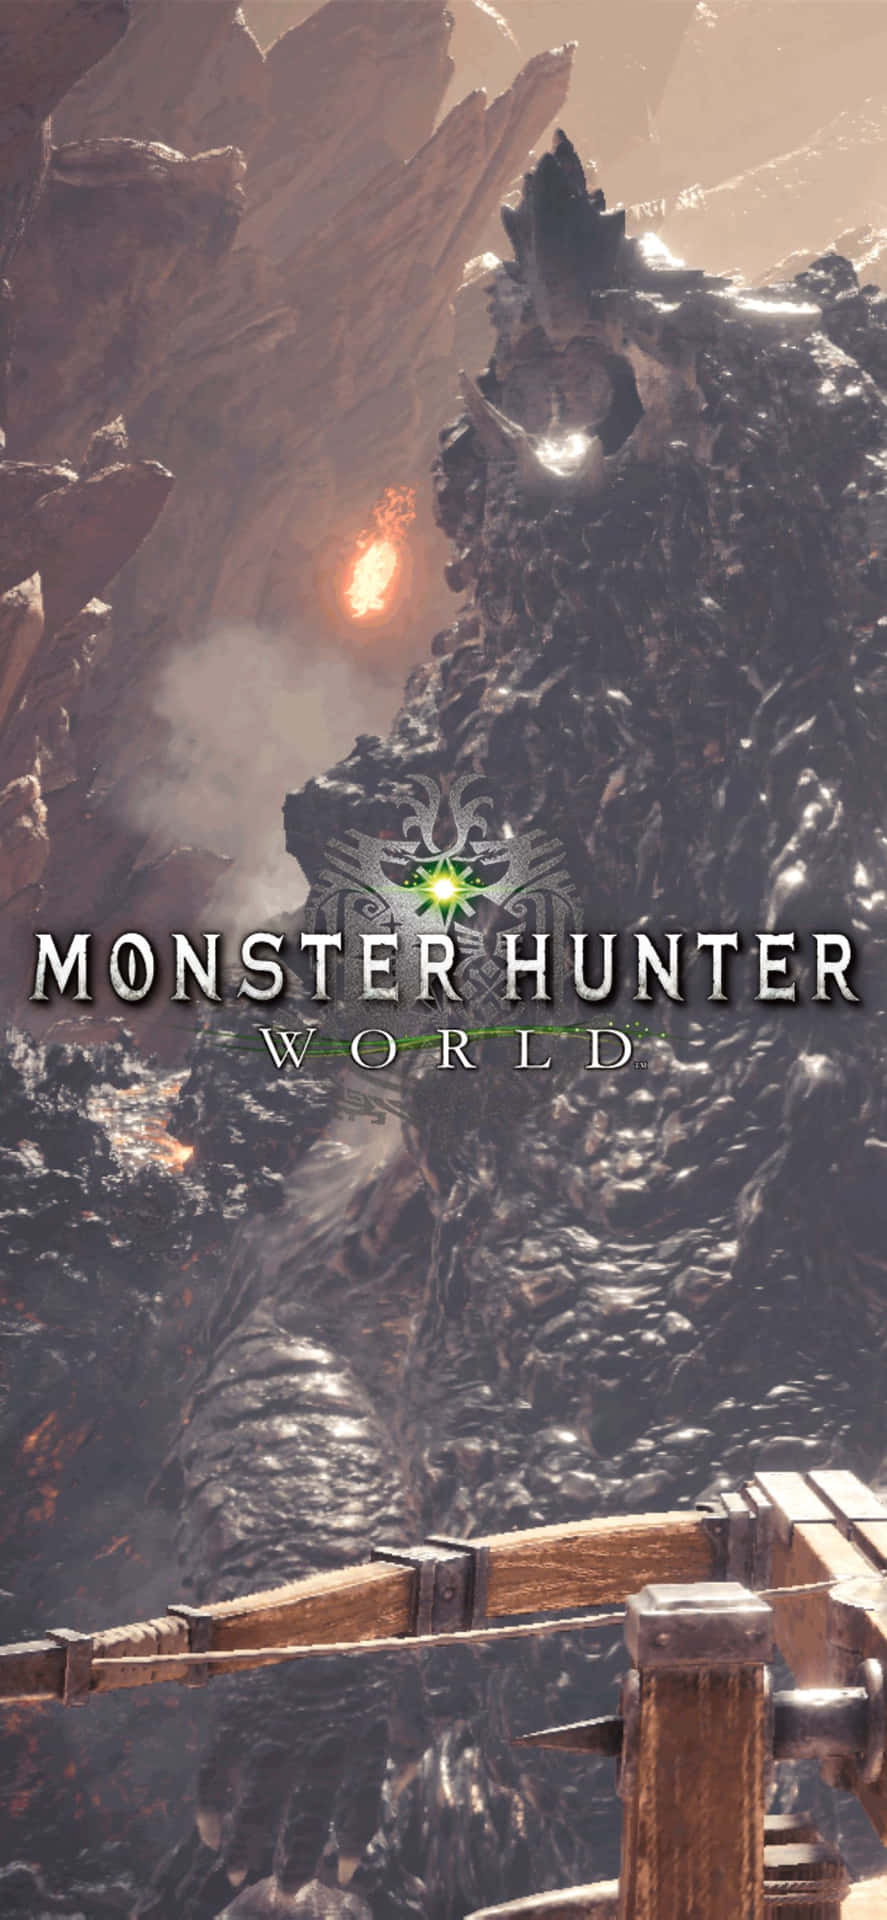 Fondode Pantalla De Fuego De Monster Hunter World Para Iphone Xs Max.